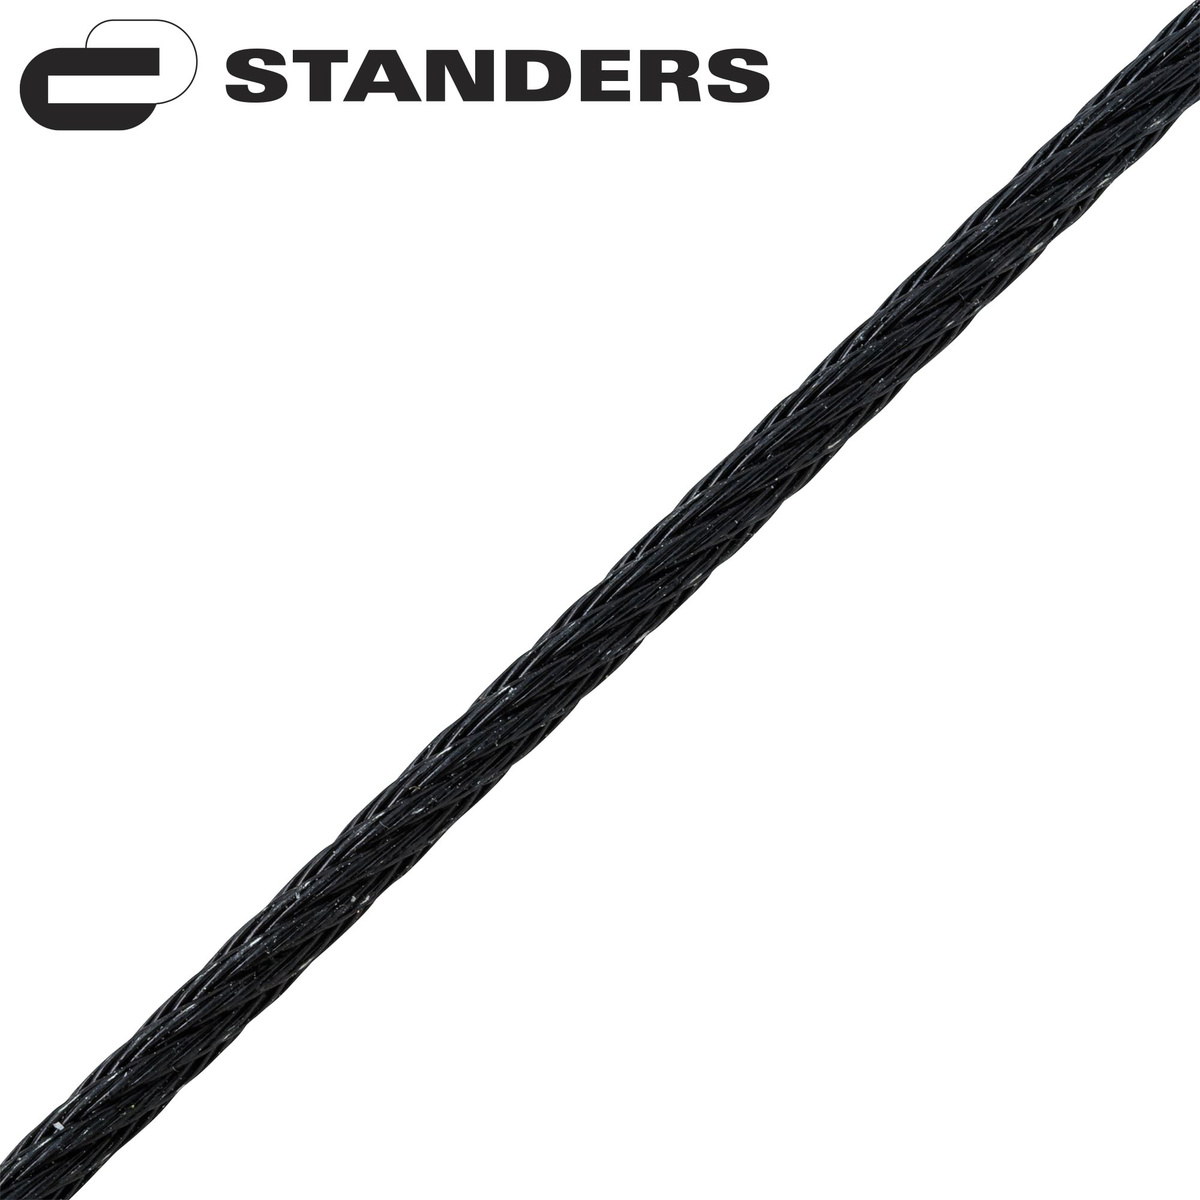 Трос стальной оцинкованный Standers DIN 3055 2 мм 10 м/уп., цвет черный, 10 м/уп.